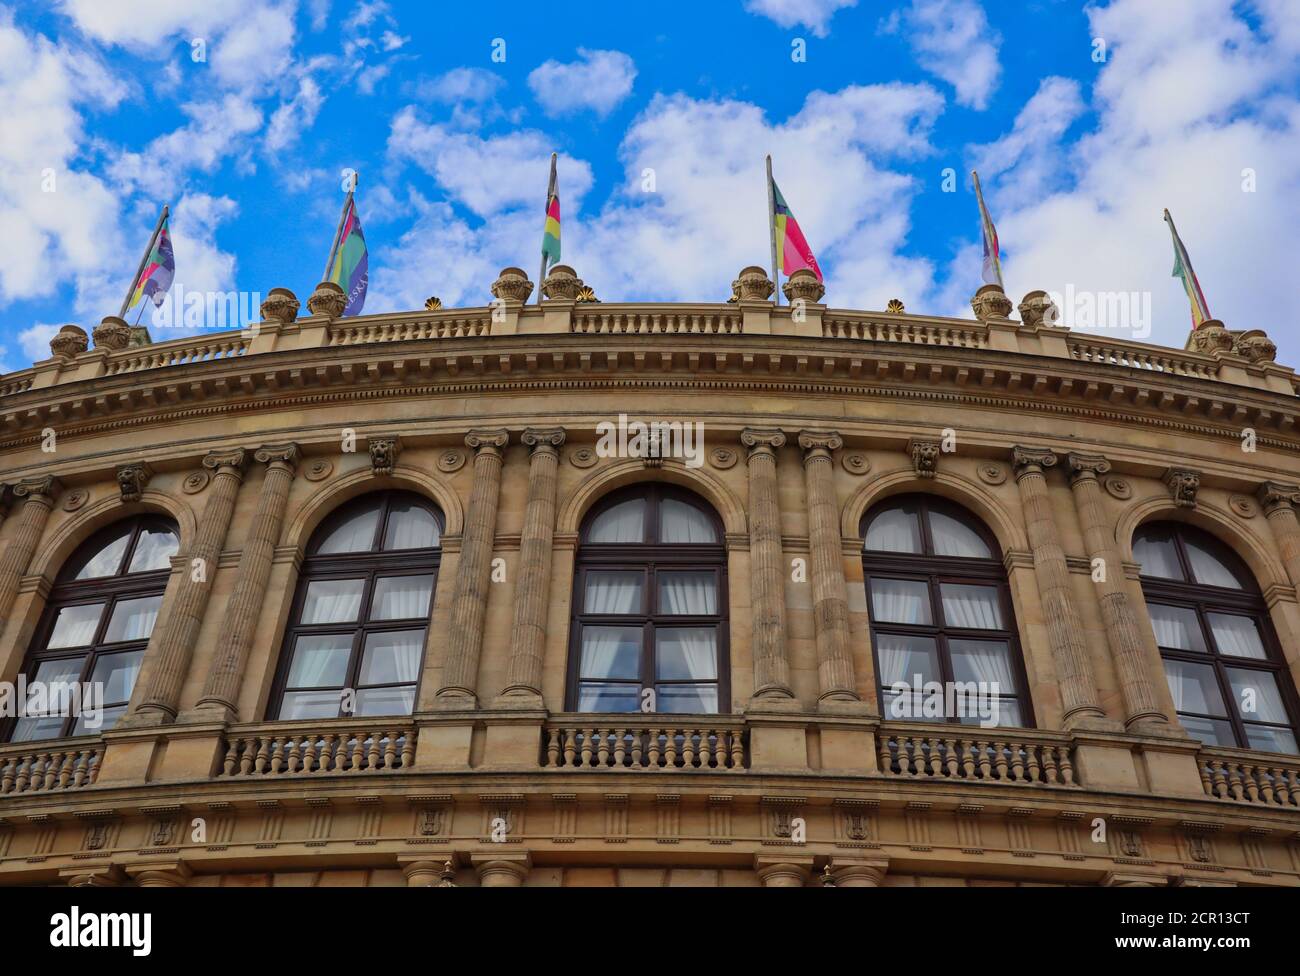 Nahaufnahme des Rudolfinums in Prag. Es ist im Stil der Neorenaissance gestaltet und derzeit befindet sich in dem Gebäude das Tschechische Philharmonische Orchester. Stockfoto